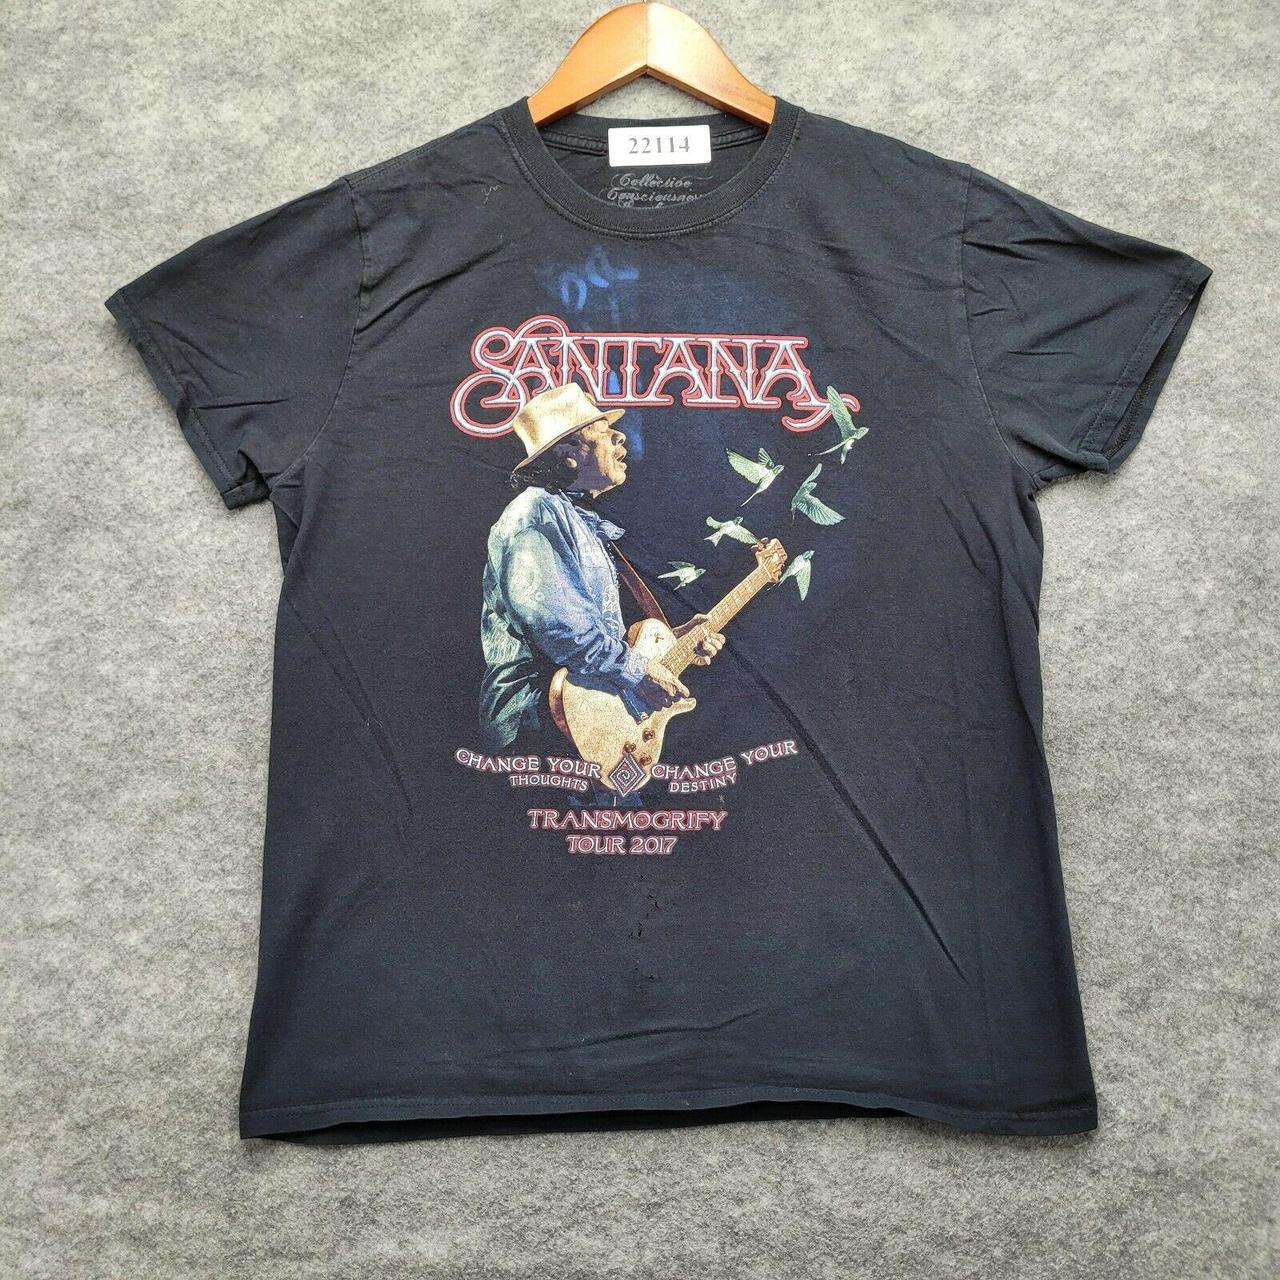 Product Image 1 - Carlos Santana T-Shirt Oversized Medium